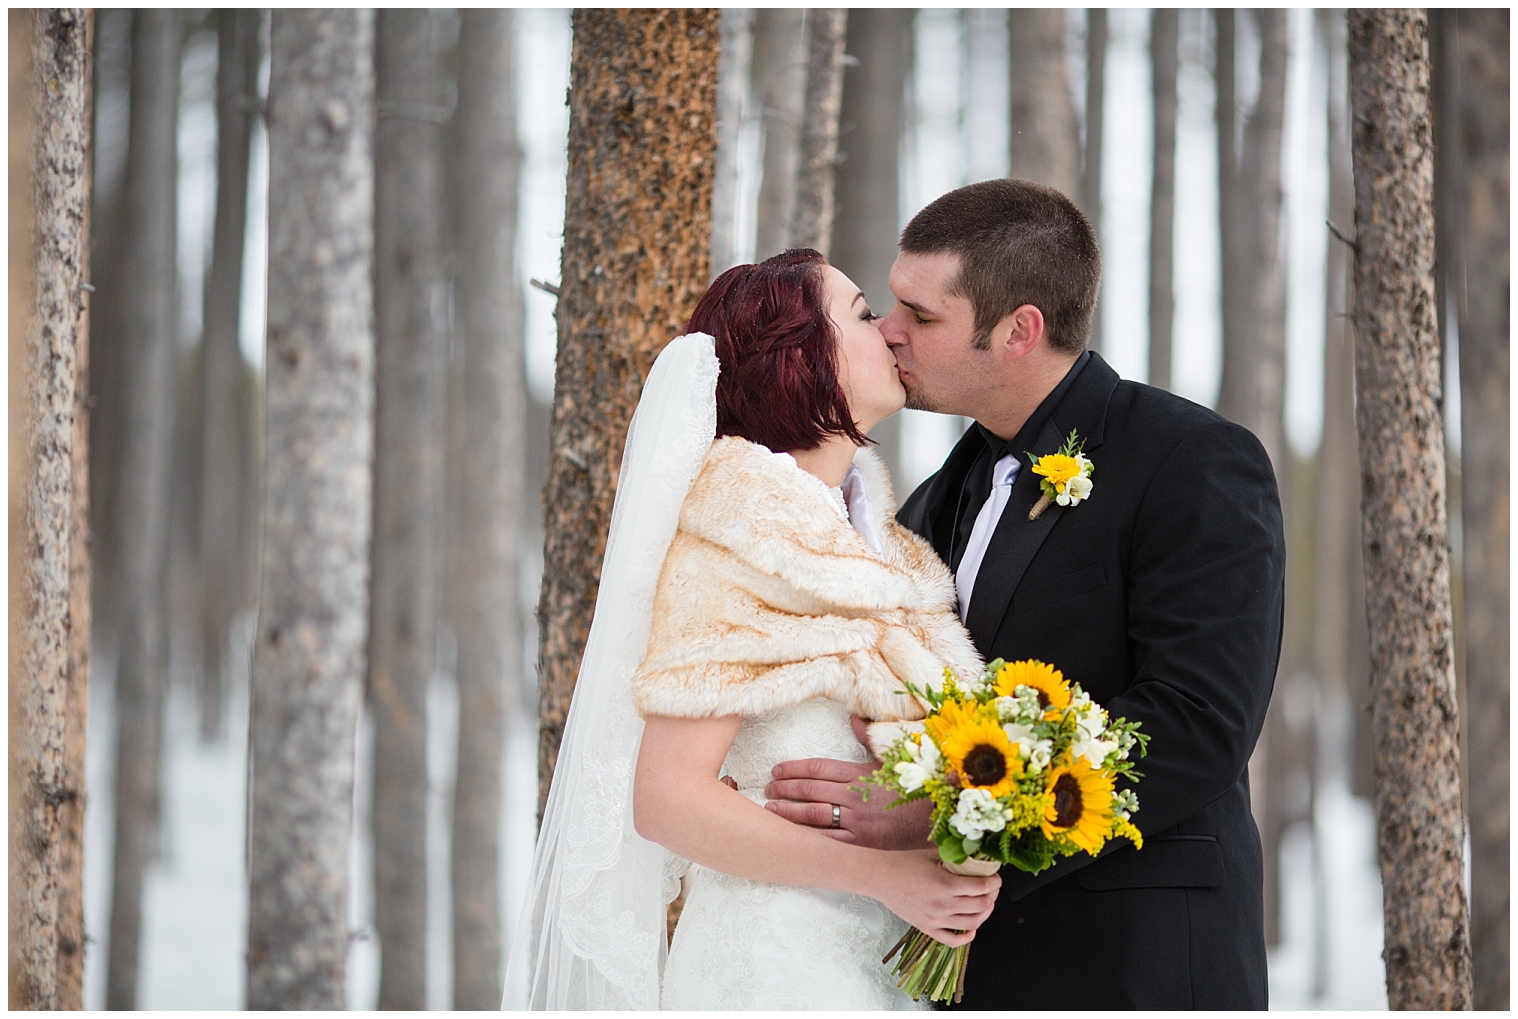 The wedding couple kiss at their Breckenridge Colorado wedding.